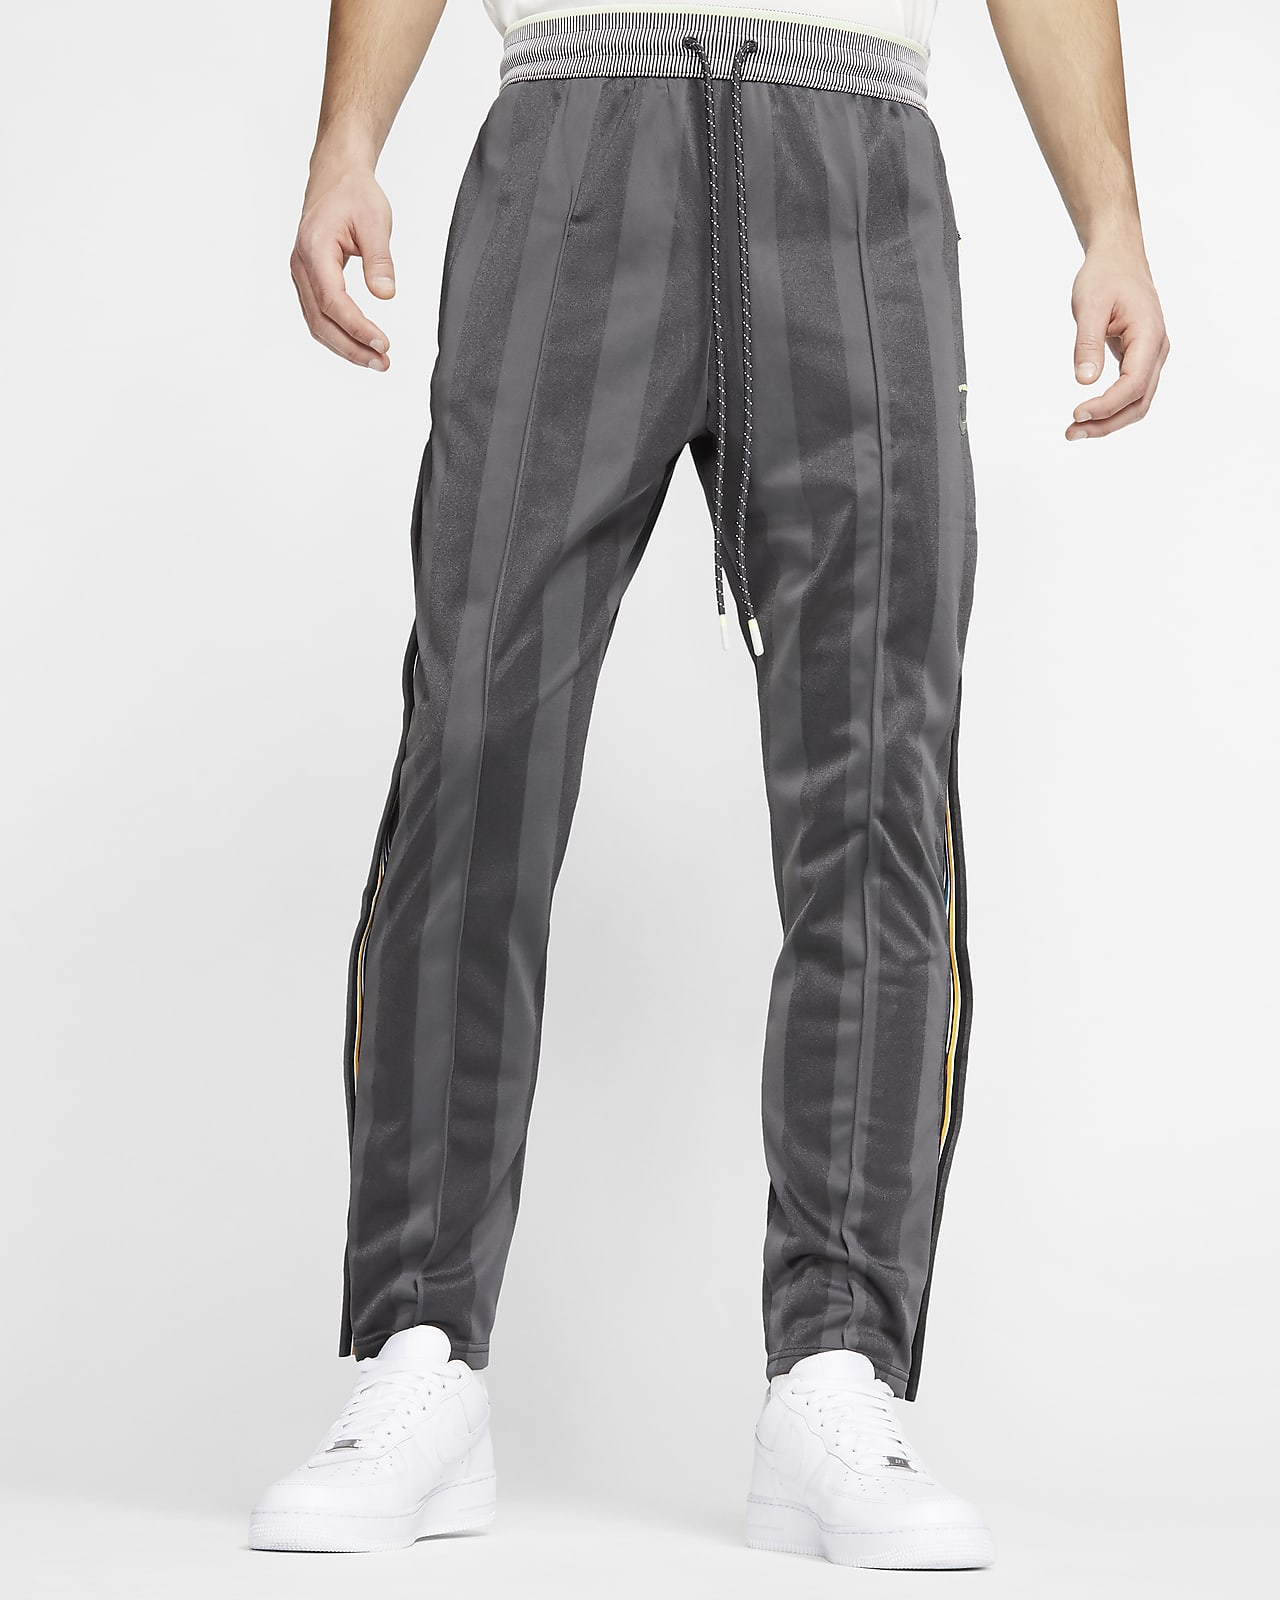 Nike x Pigalle Men's Tearaway Pants 